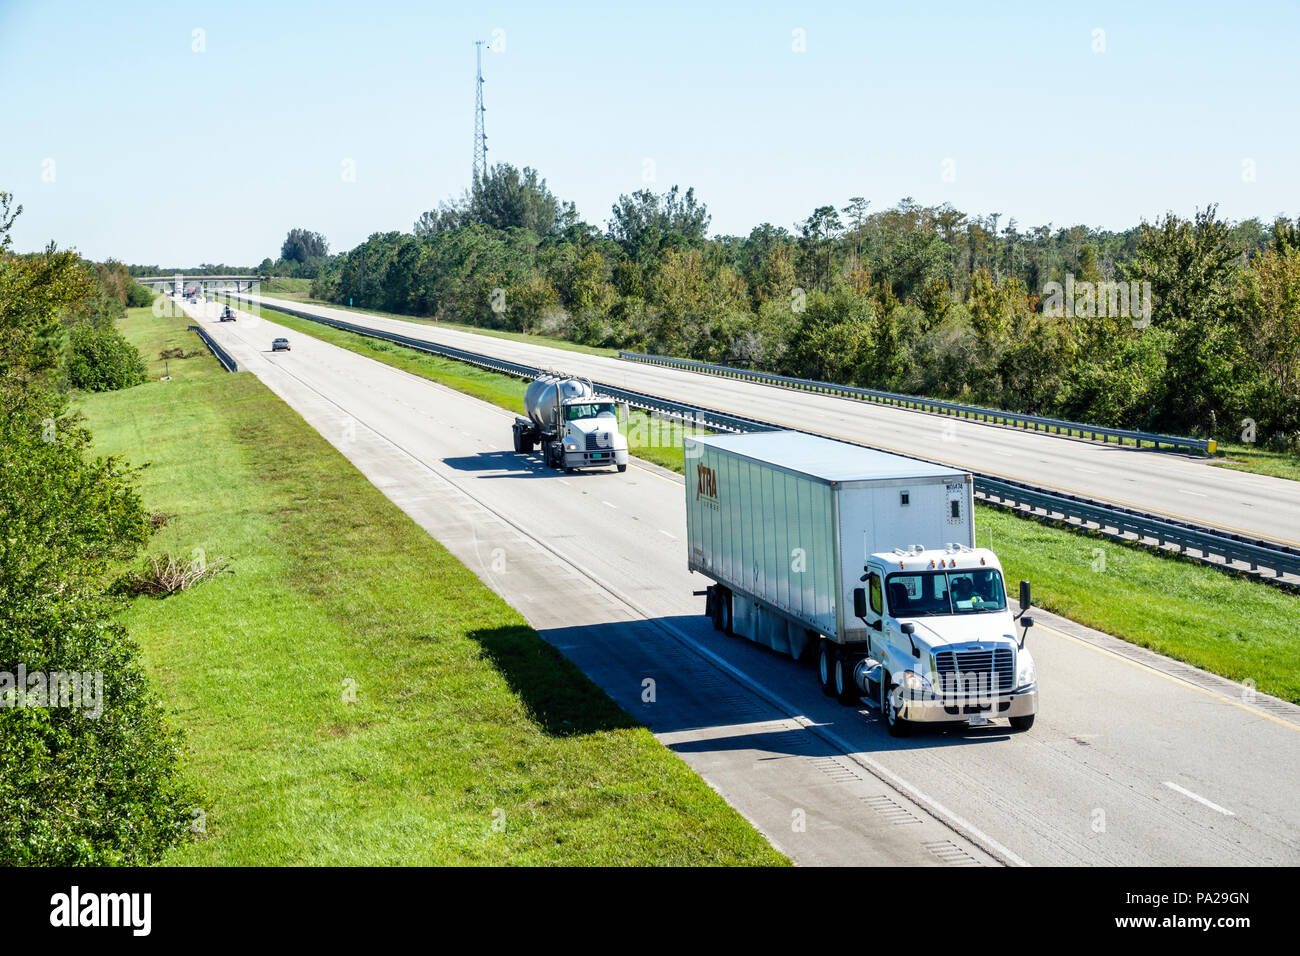 Florida,Kenansville,Florida Turnpike route à péage camion routier, autoroute à deux voies divisée, médiane,FL171029144 Banque D'Images